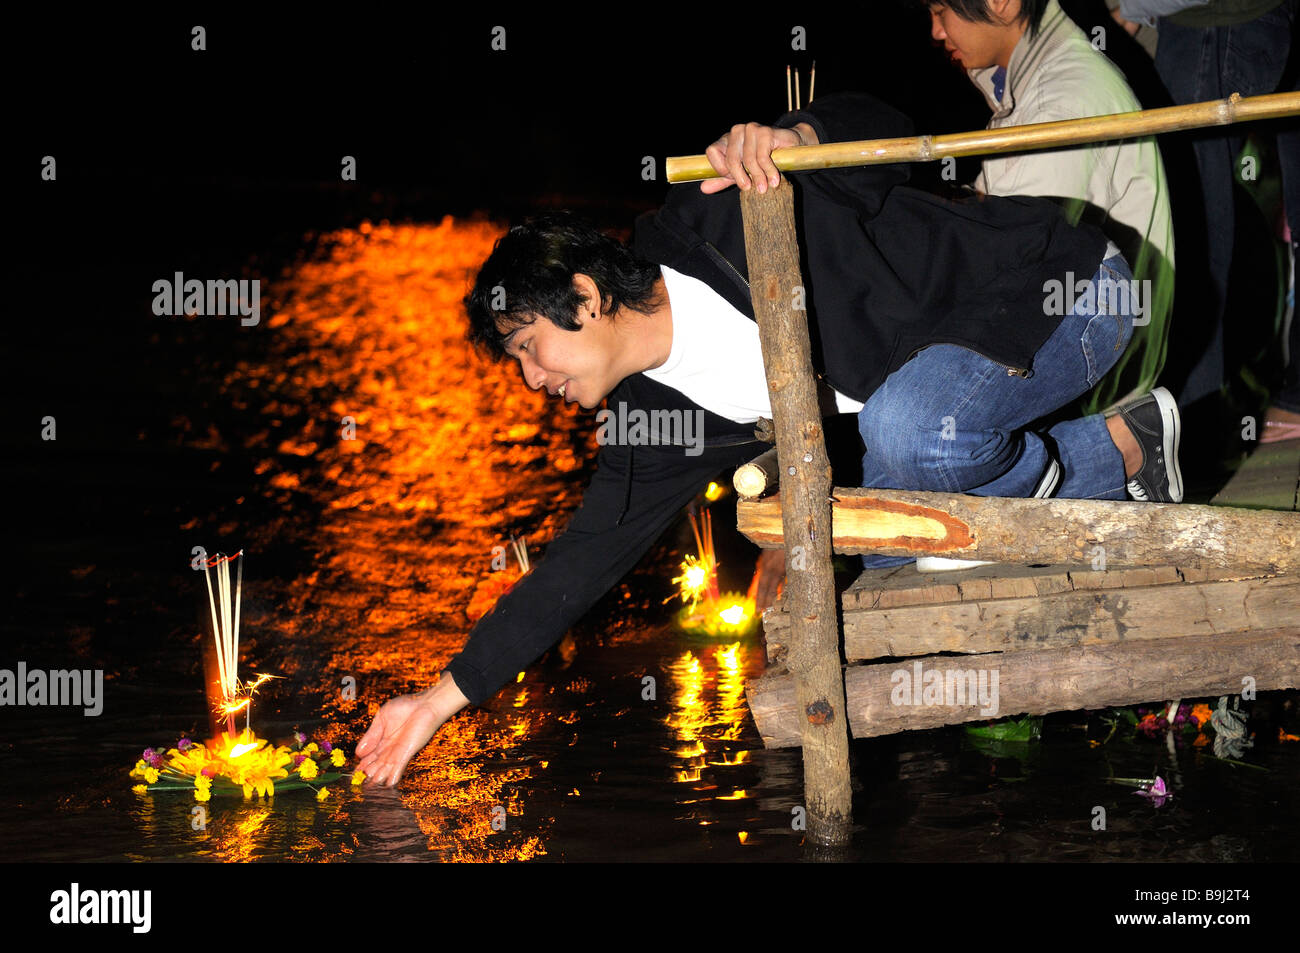 Loi Krathong, Fête de la lumière sur la rivière Yuam, libérant les gens petits flotteurs dans l'eau, Mae Sariang, Thailande, Asie Banque D'Images